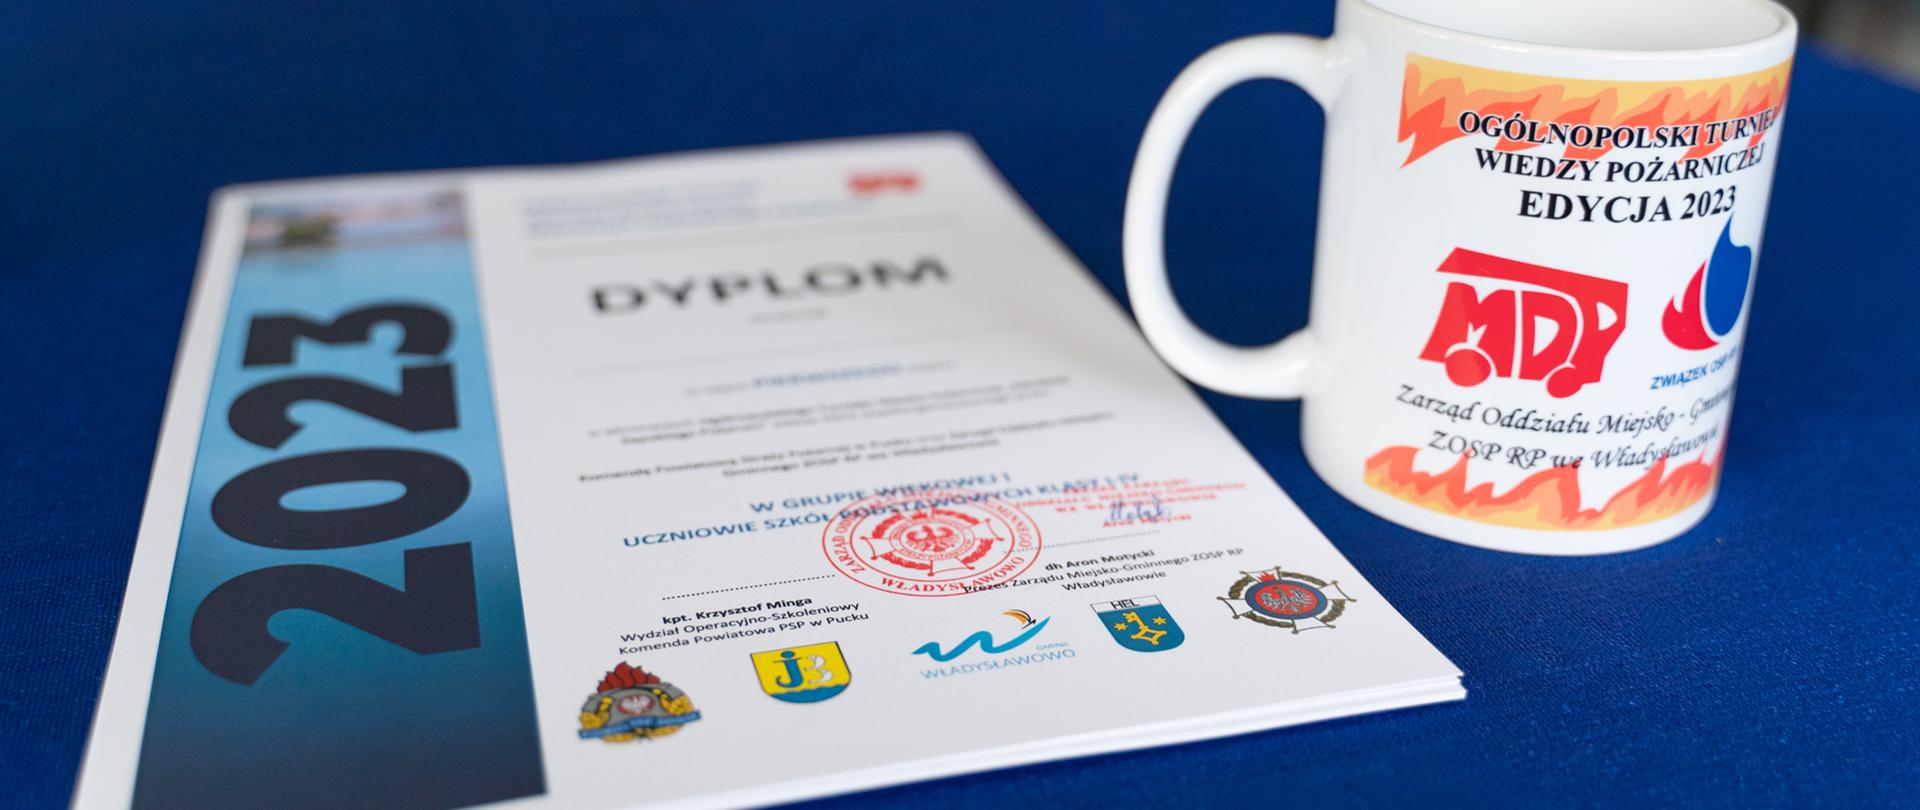 Zdjęcie przedstawia dyplom i kubek z logo OGÓLNOPOLSKIEGO TURNIEJU WIEDZY POŻARNICZEJ